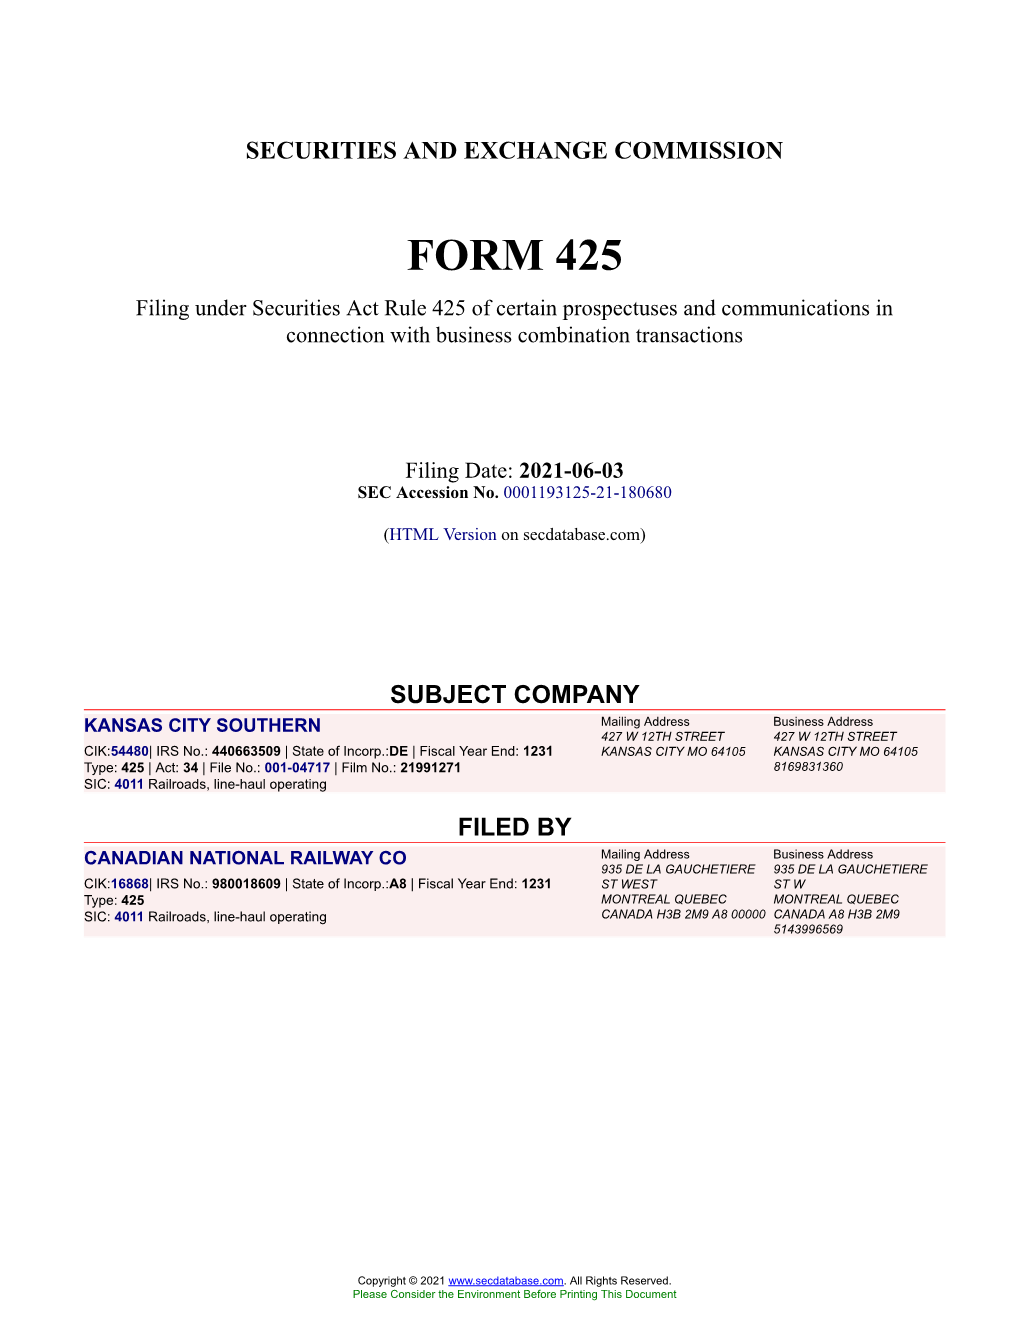 KANSAS CITY SOUTHERN Form 425 Filed 2021-06-03